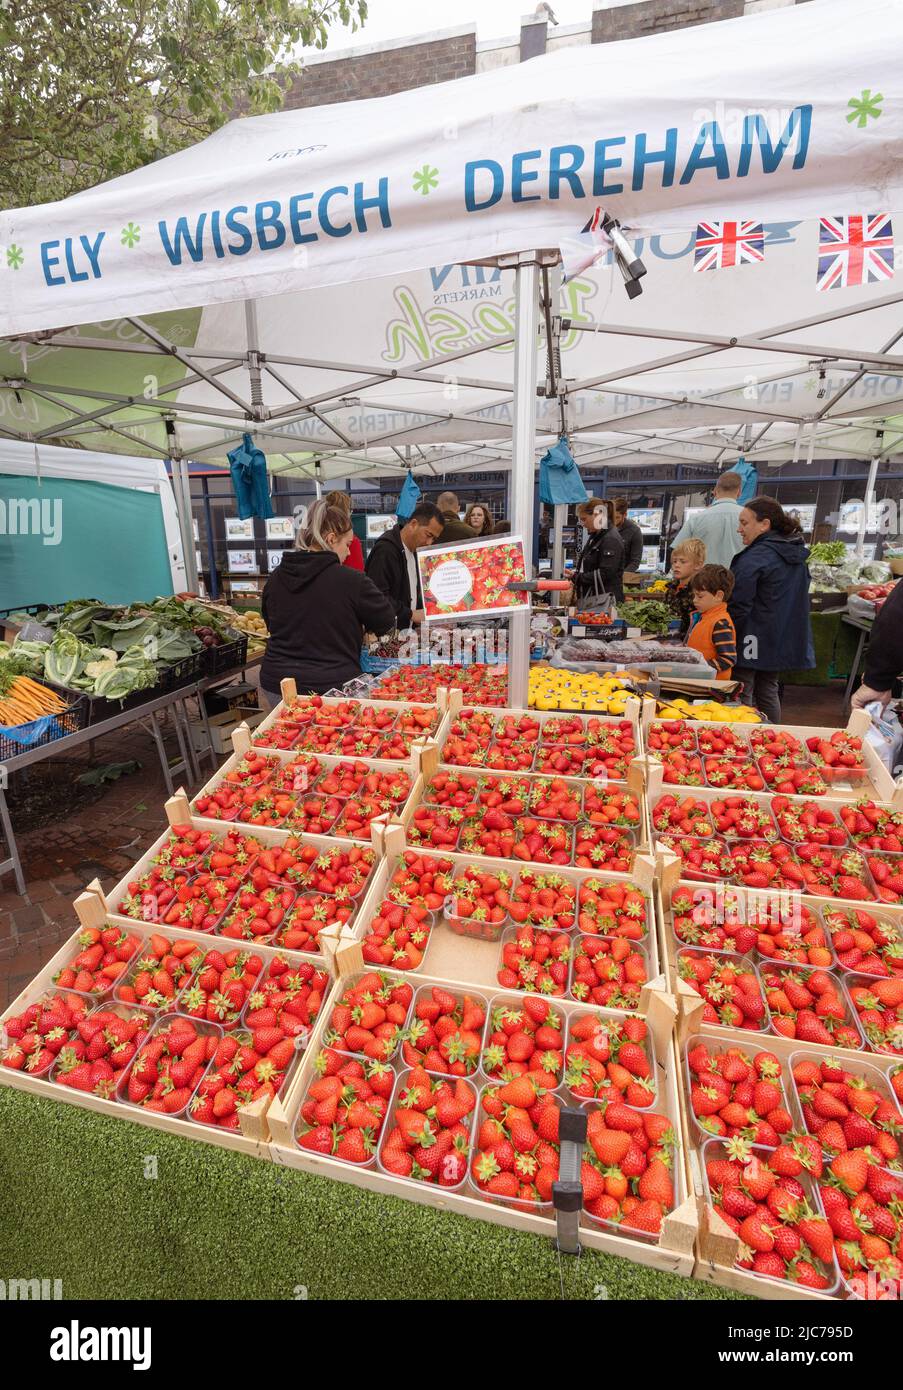 Erdbeerstand UK; Erdbeeren zum Verkauf an einem Obstmarkt, Ely Market, Ely Cambridgeshire England UK Stockfoto